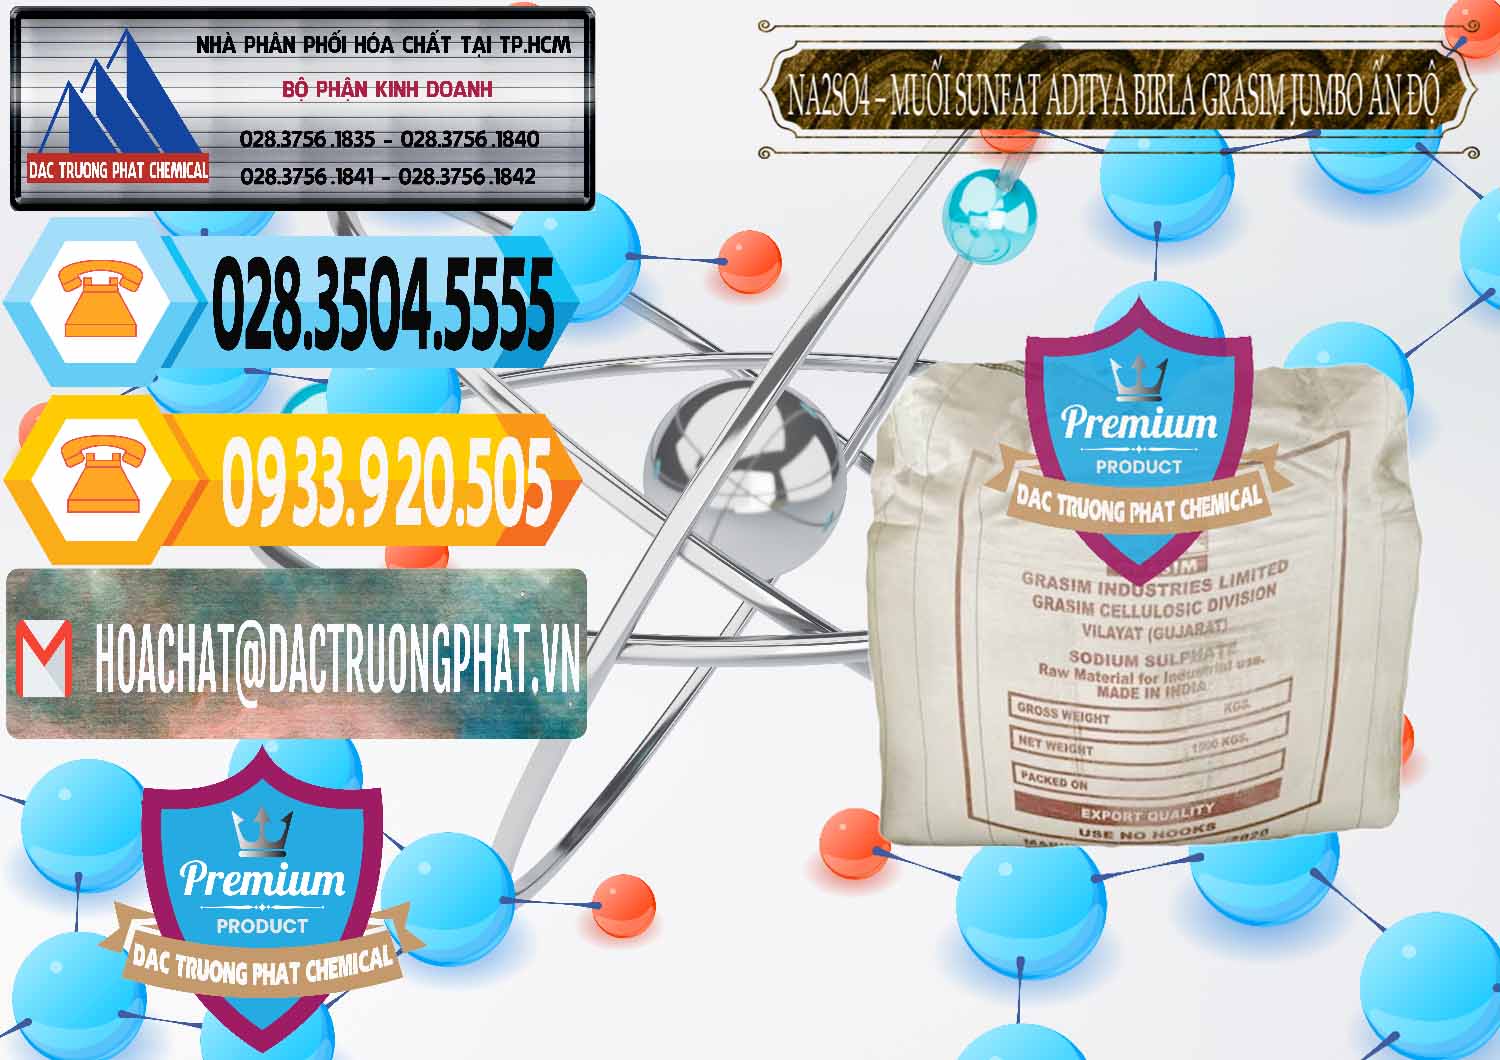 Đơn vị bán và cung cấp Sodium Sulphate - Muối Sunfat Na2SO4 Jumbo Bành Aditya Birla Grasim Ấn Độ India - 0357 - Công ty chuyên kinh doanh _ cung cấp hóa chất tại TP.HCM - hoachattayrua.net